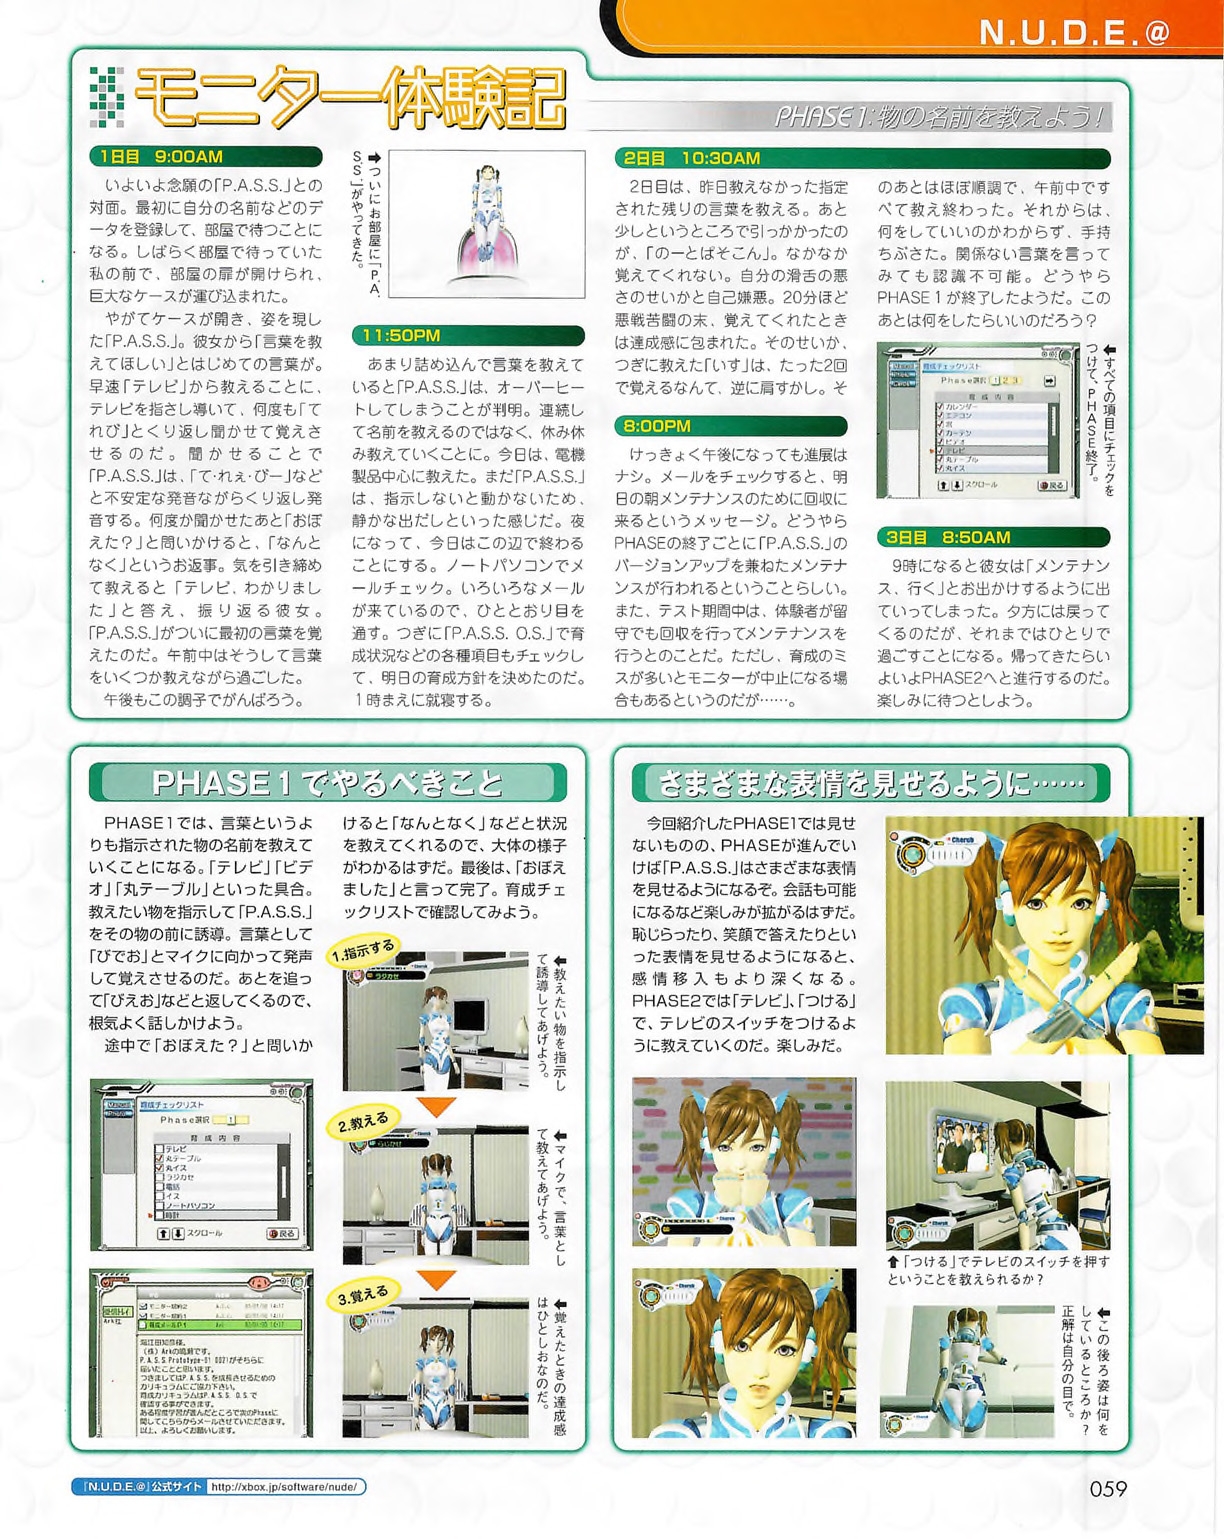 Famitsu_Xbox_2003-04_jp2 58